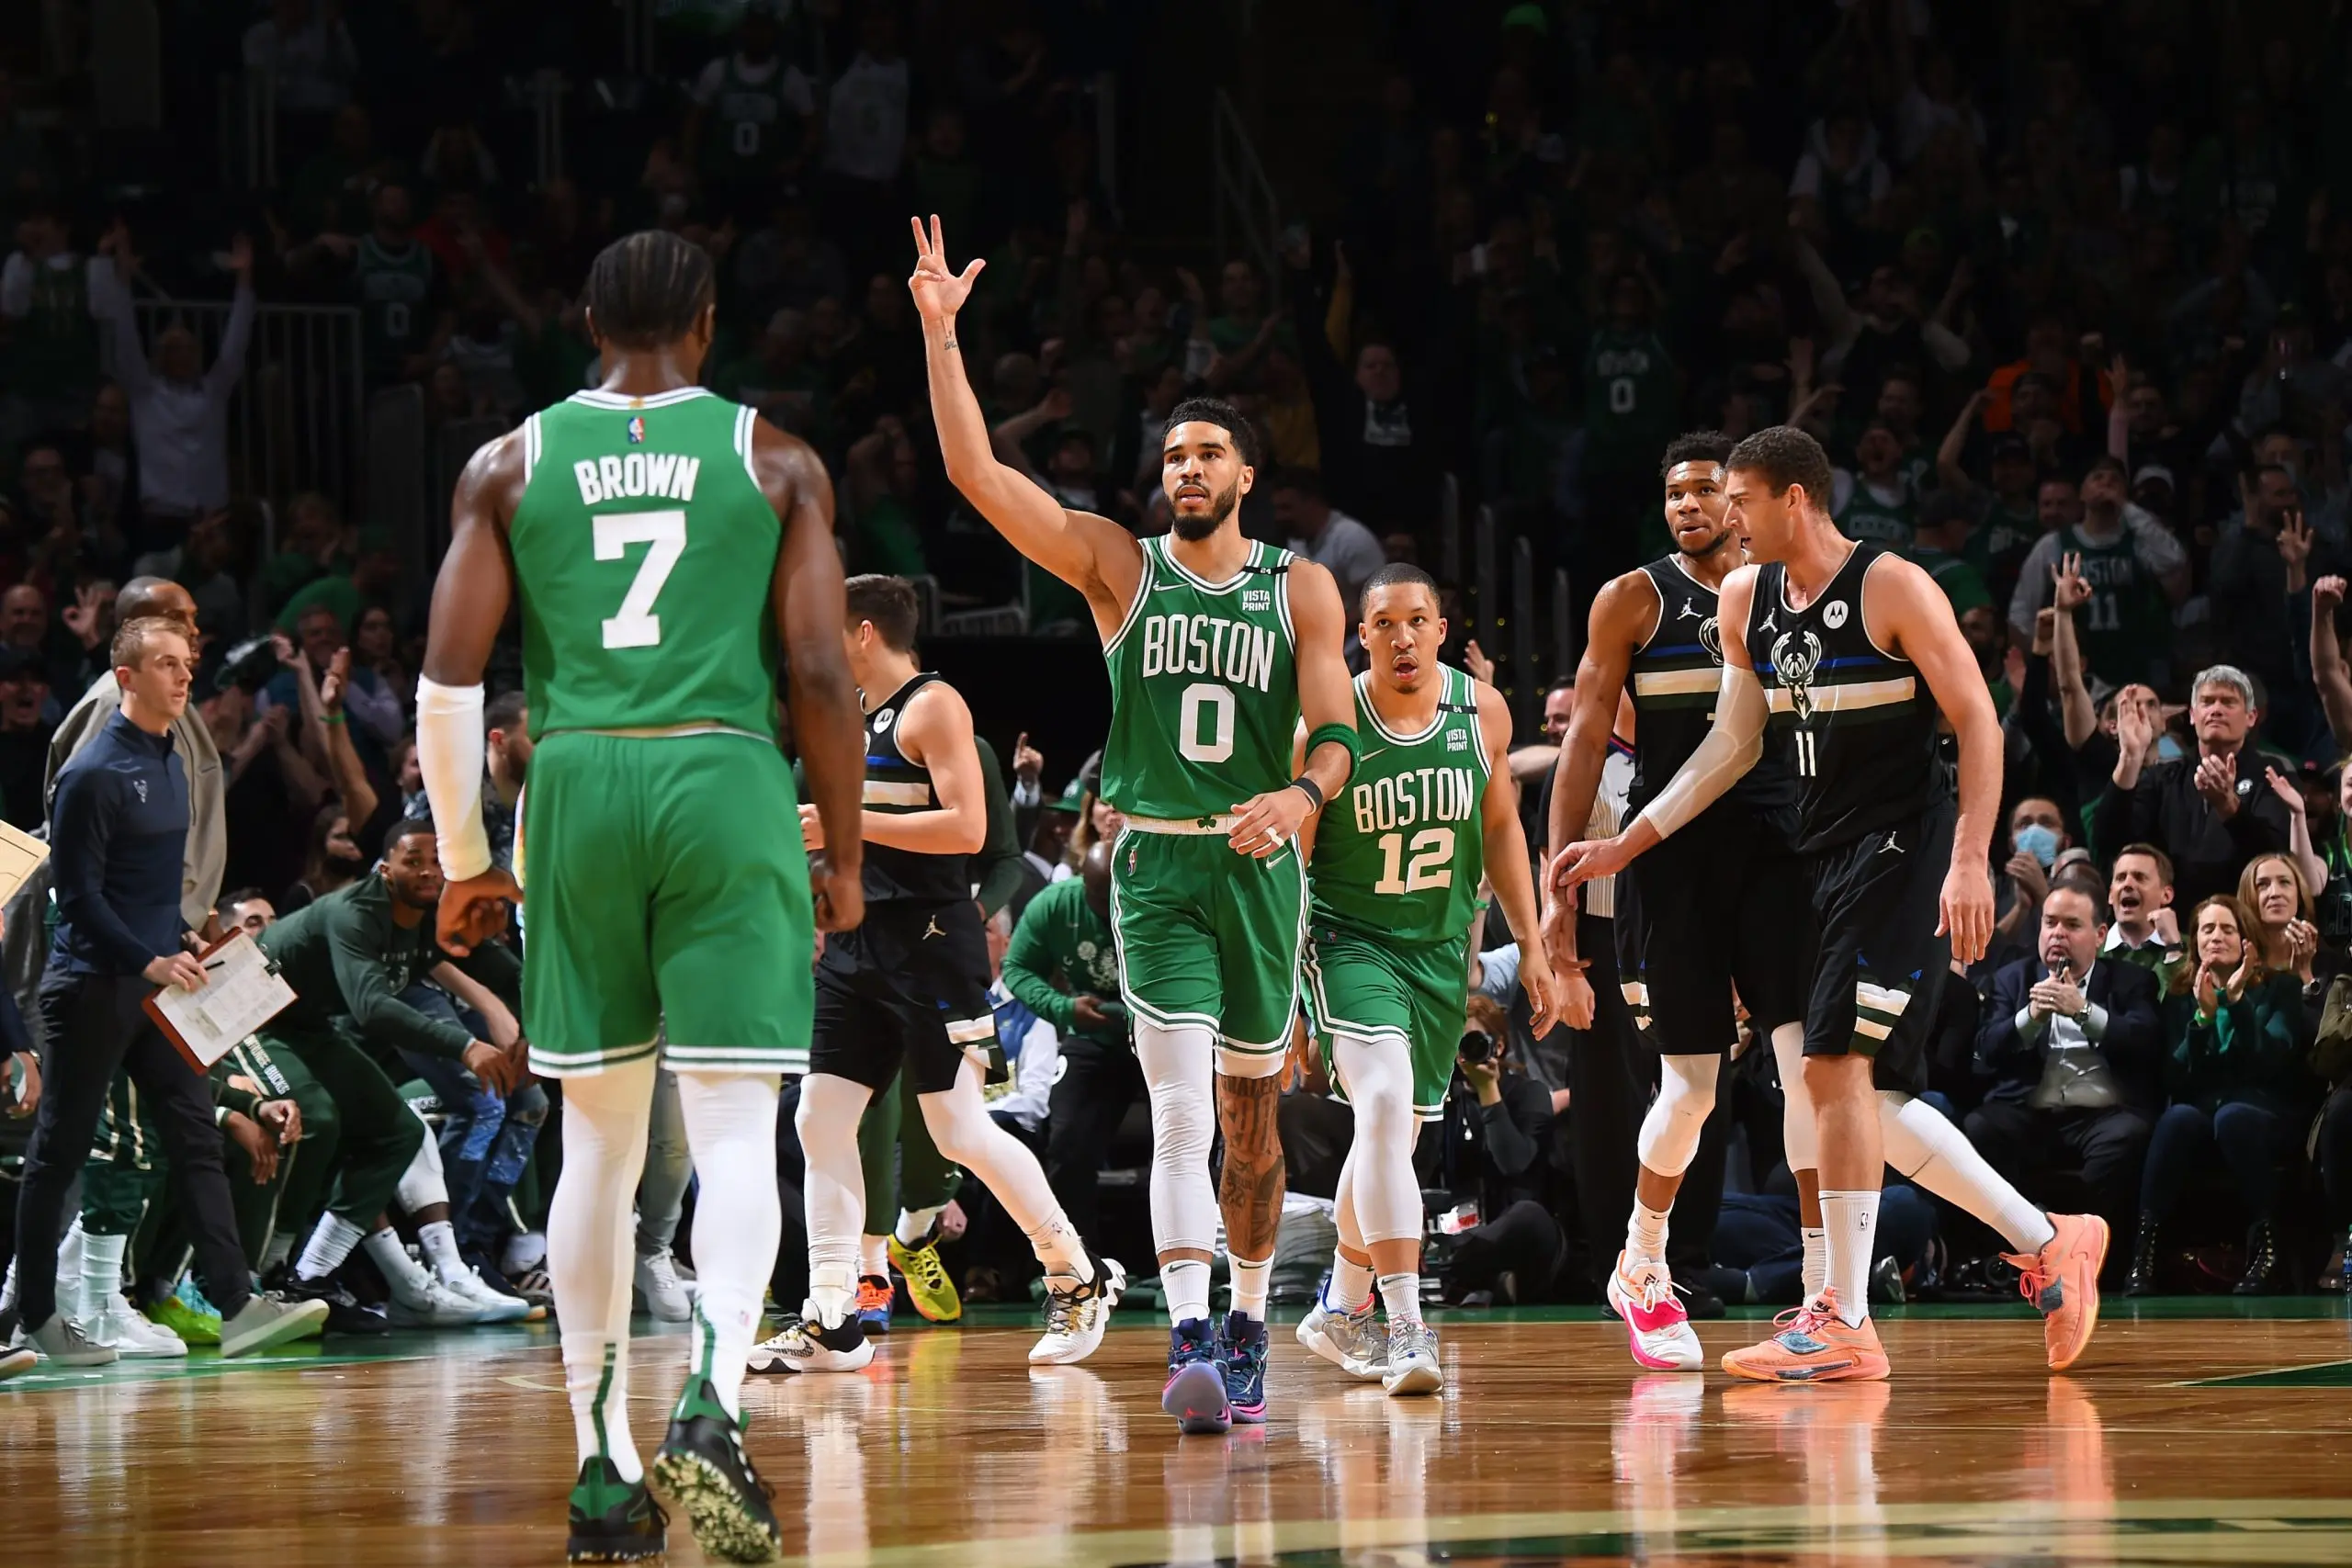 Dupla Brown e Tatum brilha, Celtics se impõem e empatam série em 1 a 1 contra Bucks